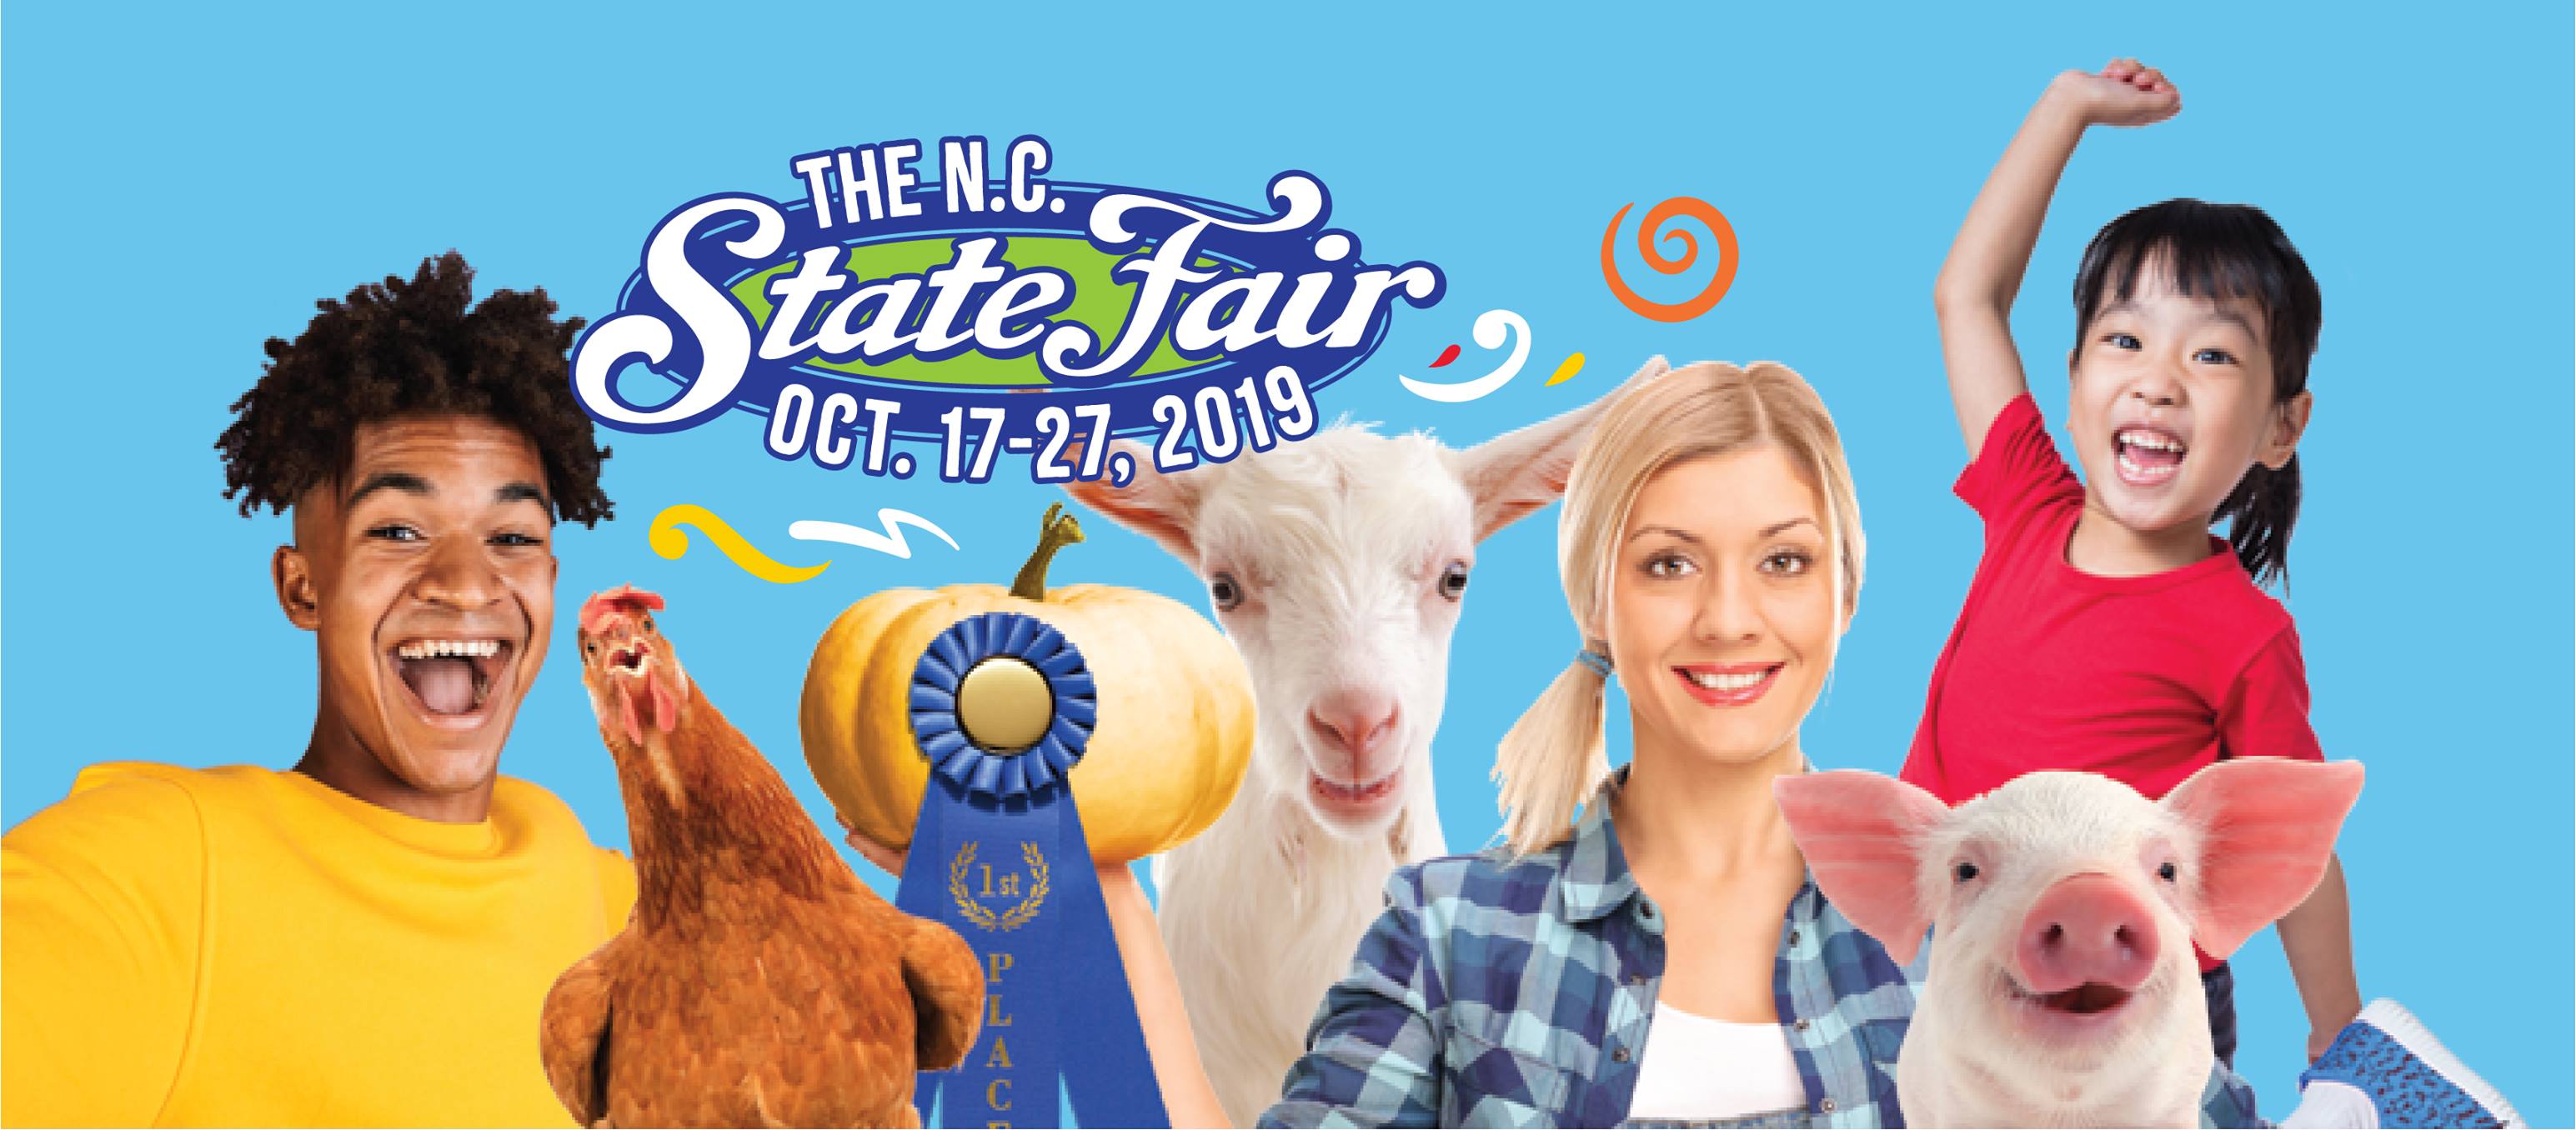 HREG NC State Fair Fun Contest